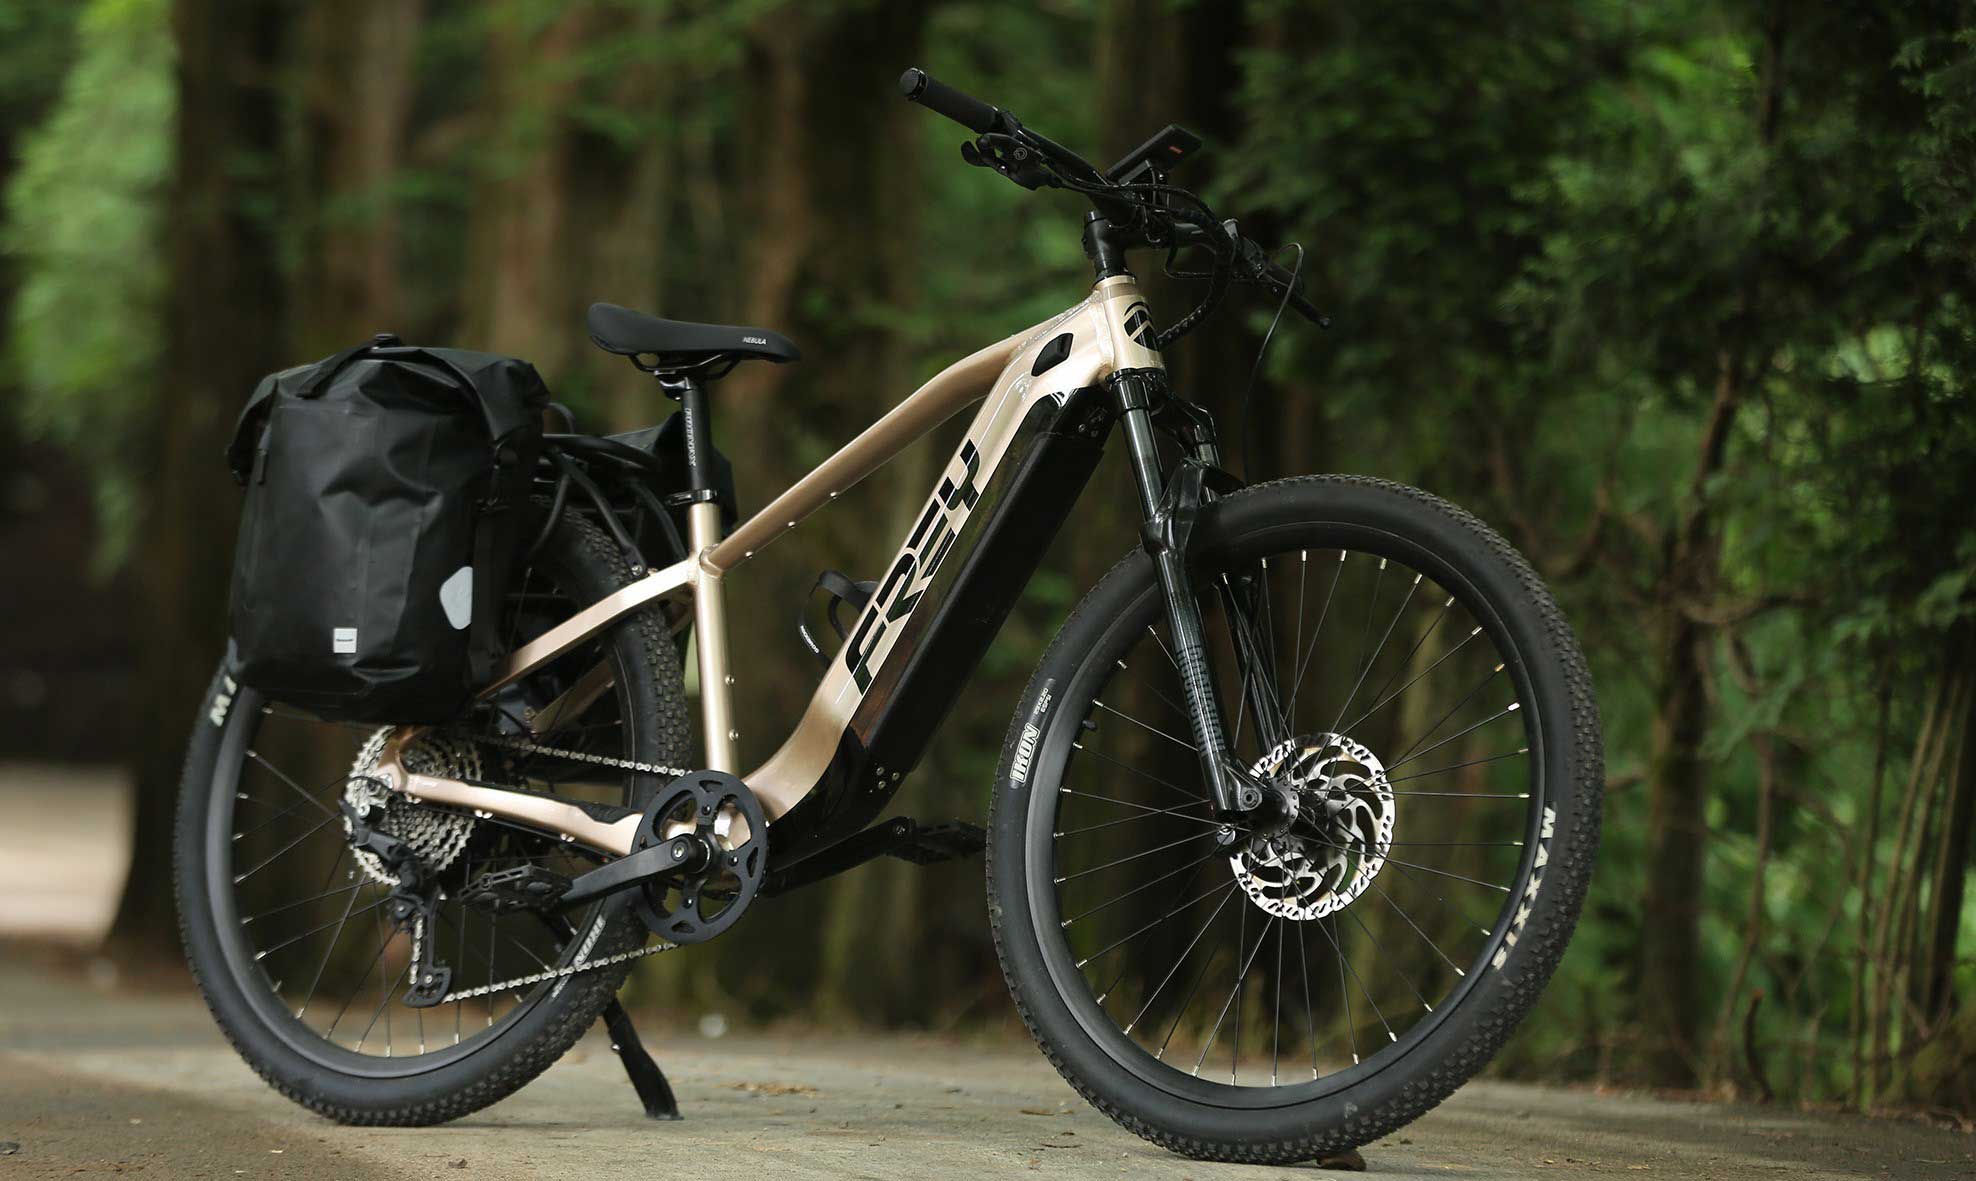 Ce vélo électrique à batterie XXL promet une autonomie record